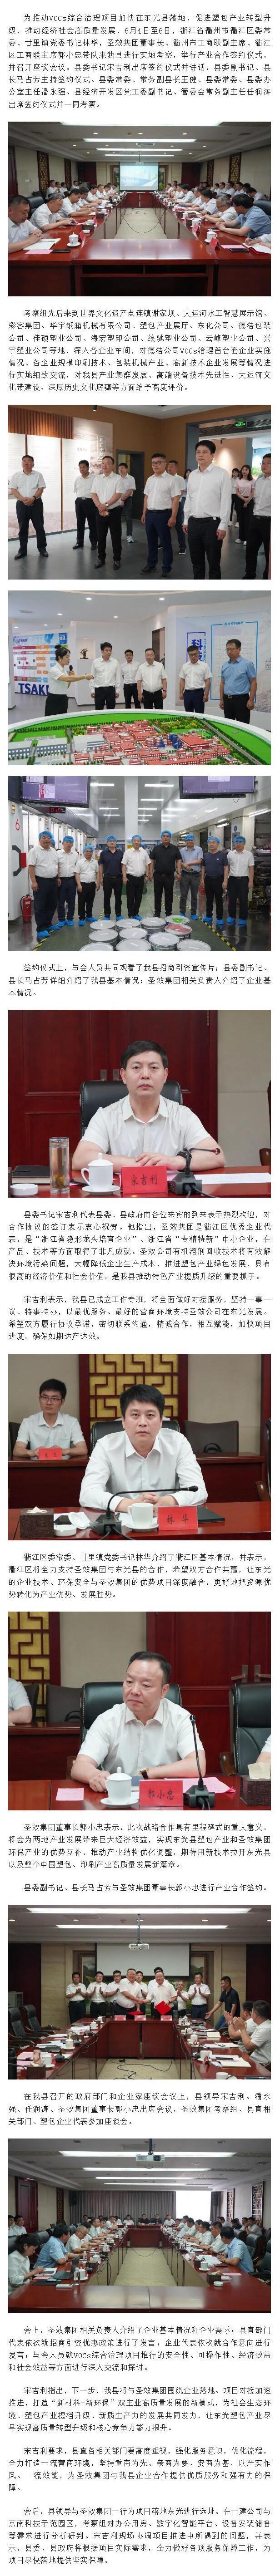 东光县人民政府与圣效集团举行产业合作签约仪式.jpg